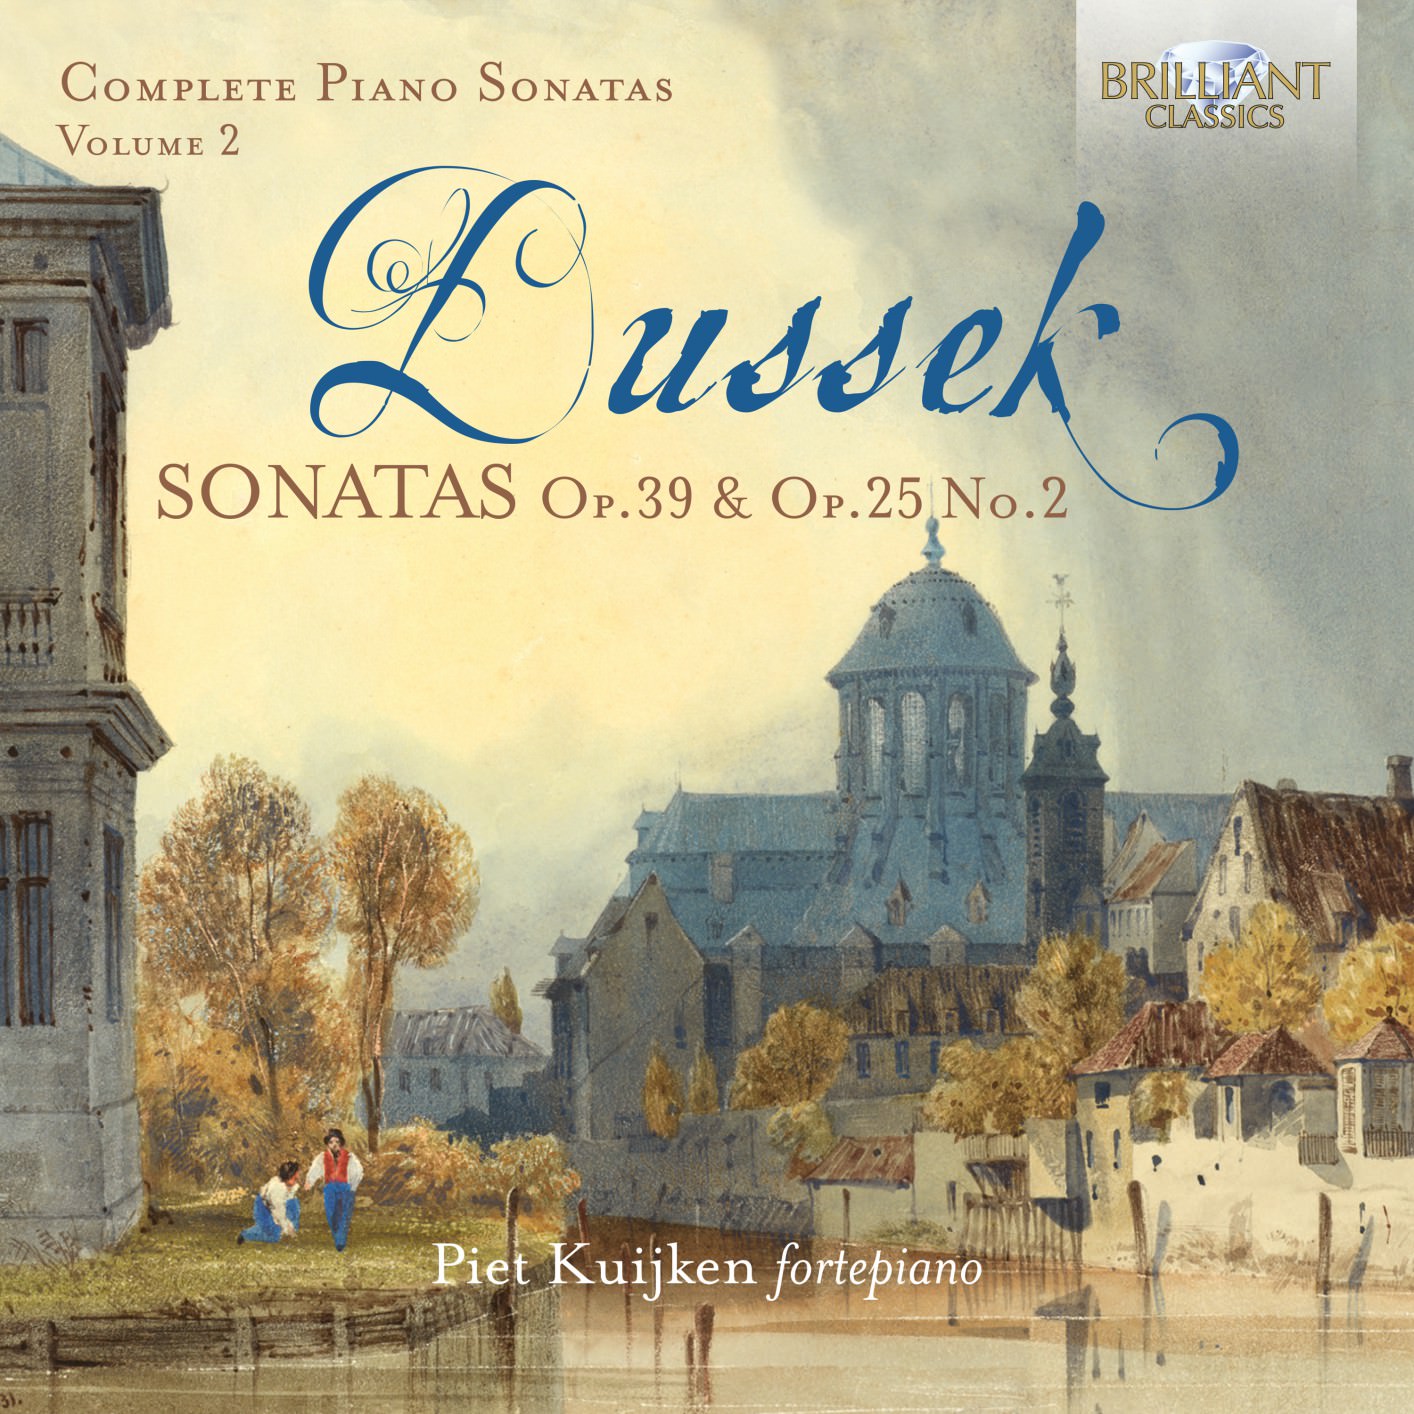 Piet Kuijken – Dussek: Sonatas, Op. 39 & Op.25 No.2 (2018) [Official Digital Download 24bit/96kHz]